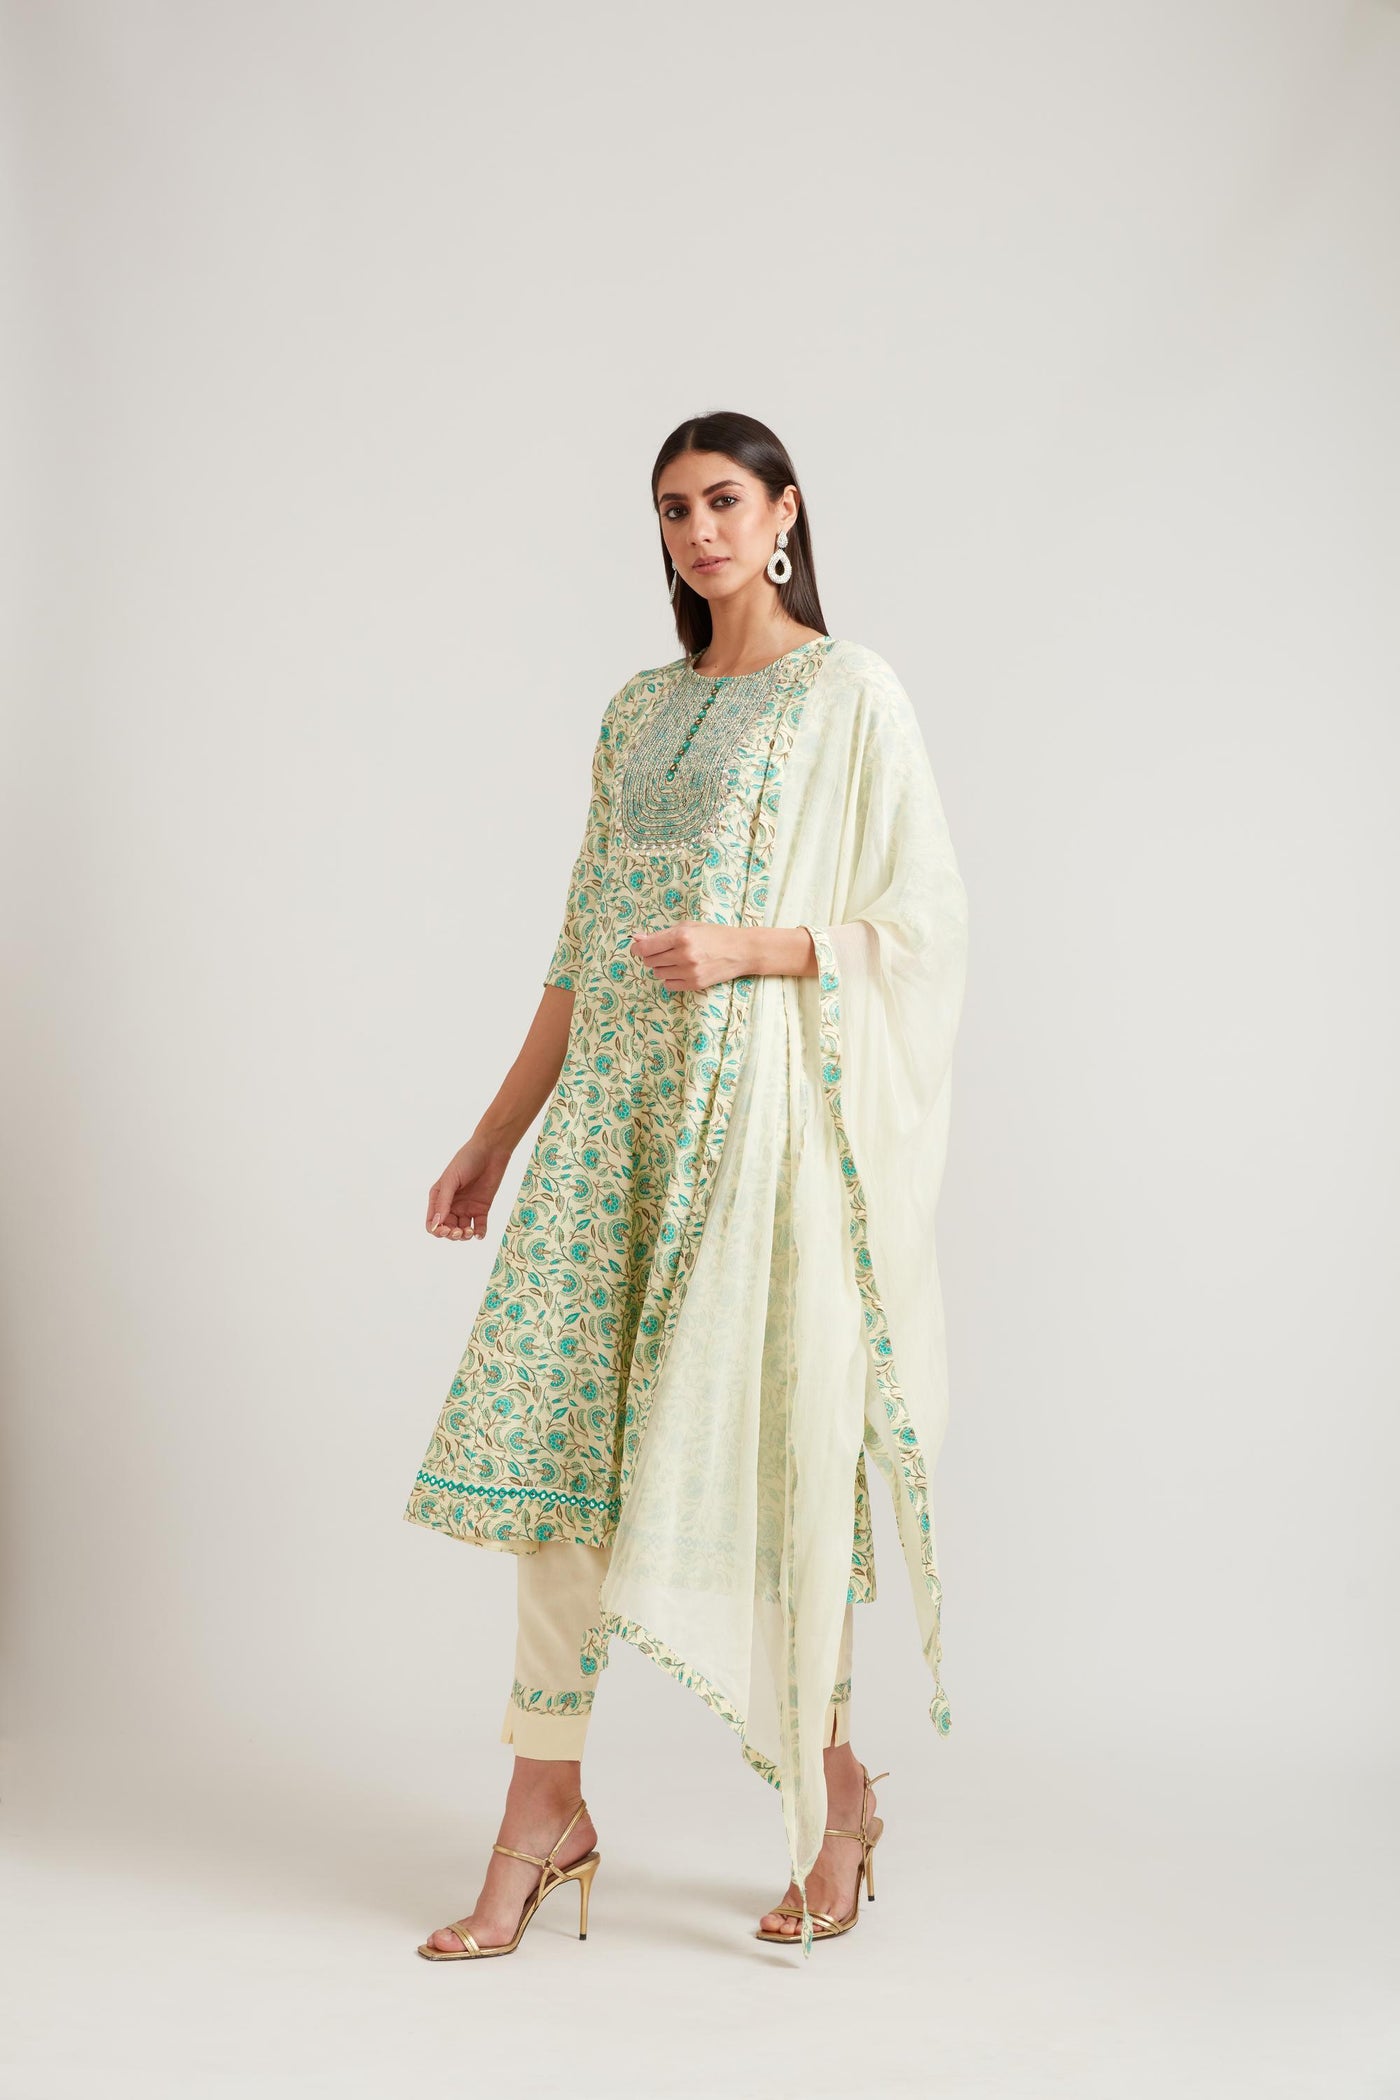 Neeru's Lemon Color Cotton Fabric Suit Set